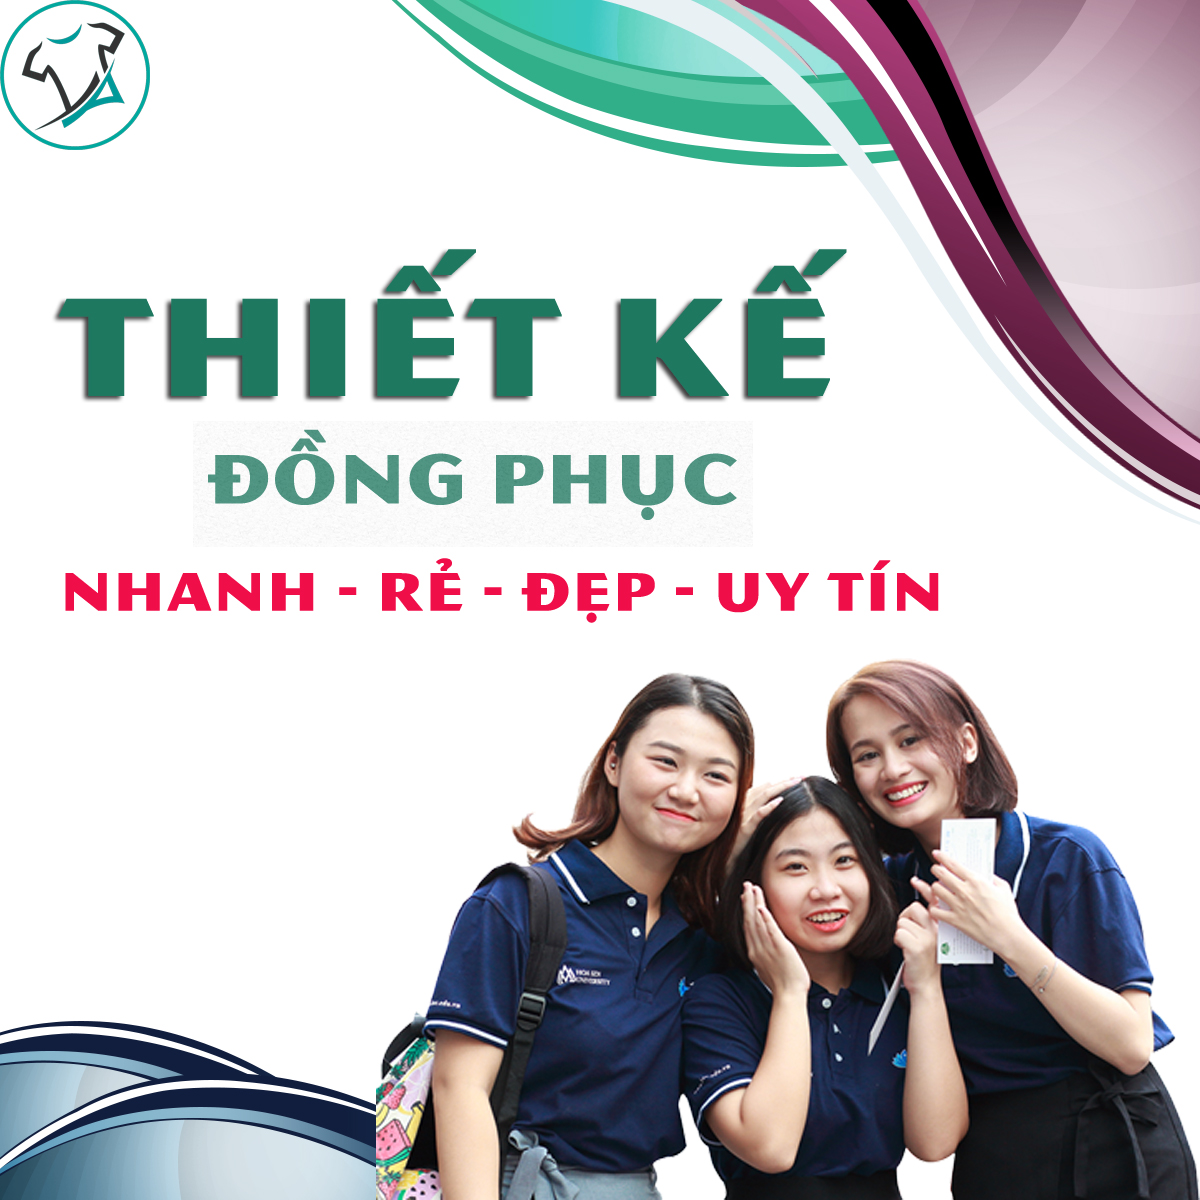 Diễn đàn rao vặt: Thiết kế đồng phục đẹp tại Vinh Thiet-ke-dong-phuc-dep-tai-vinh